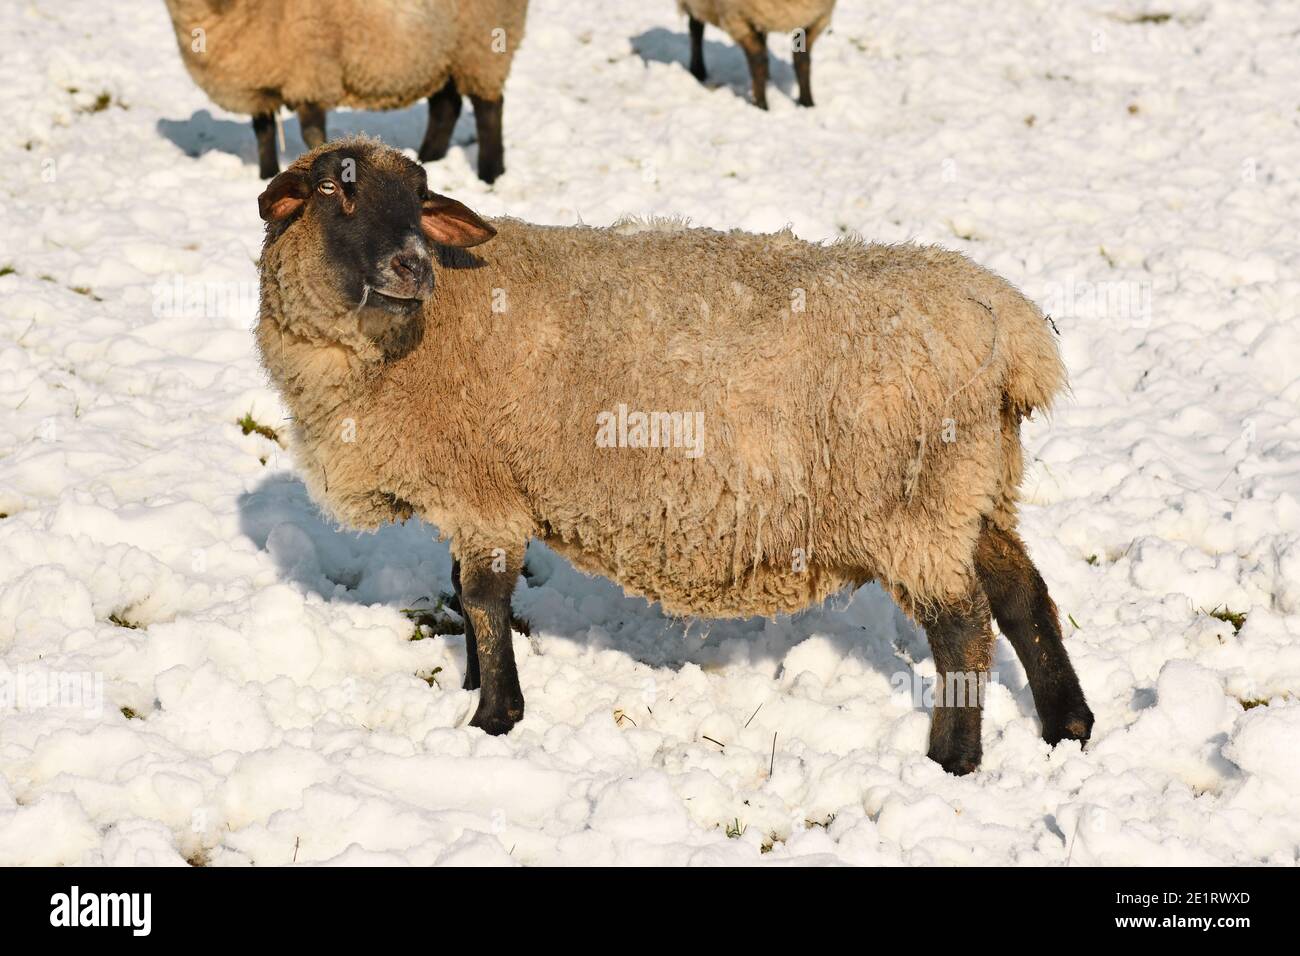 Schafe der deutschen Rasse genannt 'Deutsches schwarzes Köpfiges Fleischschaf' mit weiß Fell und schwarzer Kopf stehen im Schnee Stockfoto